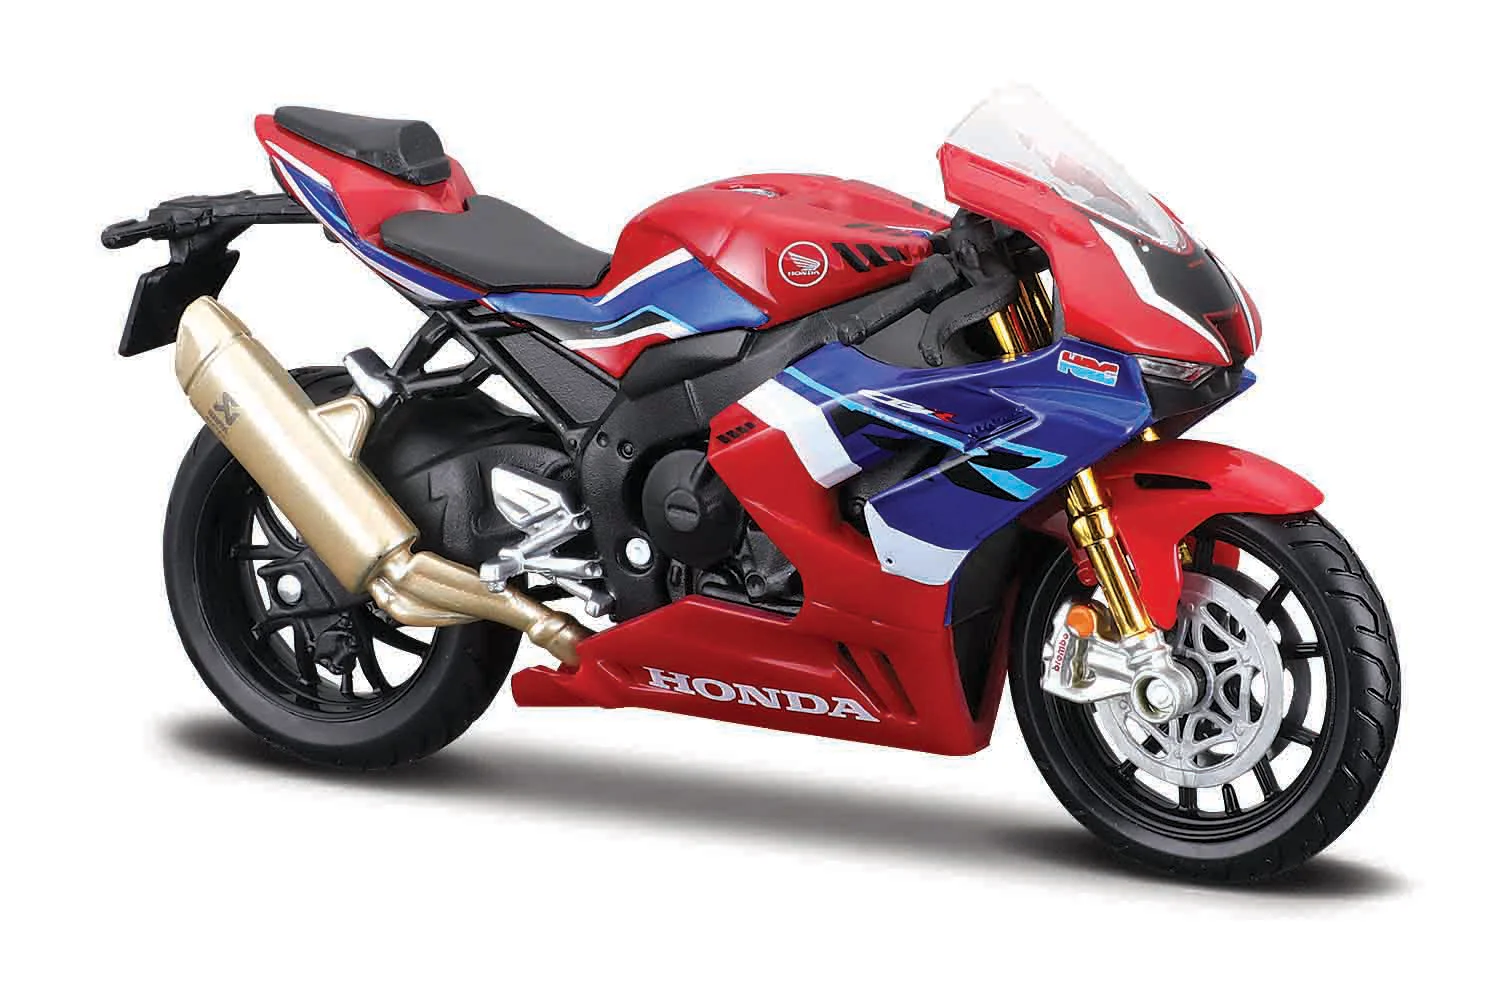 Maisto - Motocykl, HONDA CBR1000RR-R Fireblade SP, červeno-modrá, 1:18, blister box